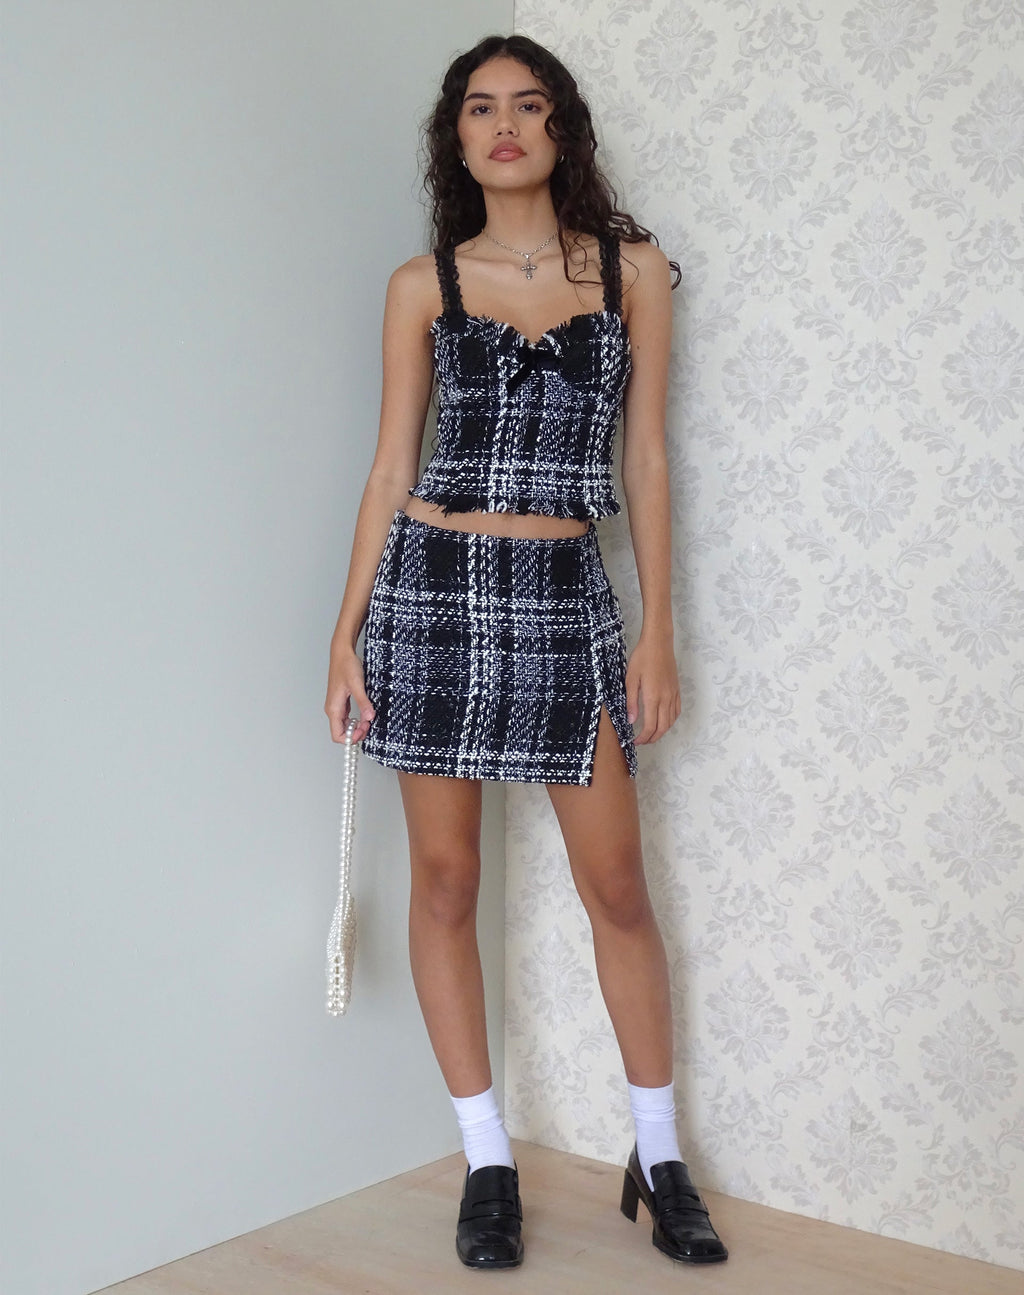 Mela Mini Skirt in Check Black and White